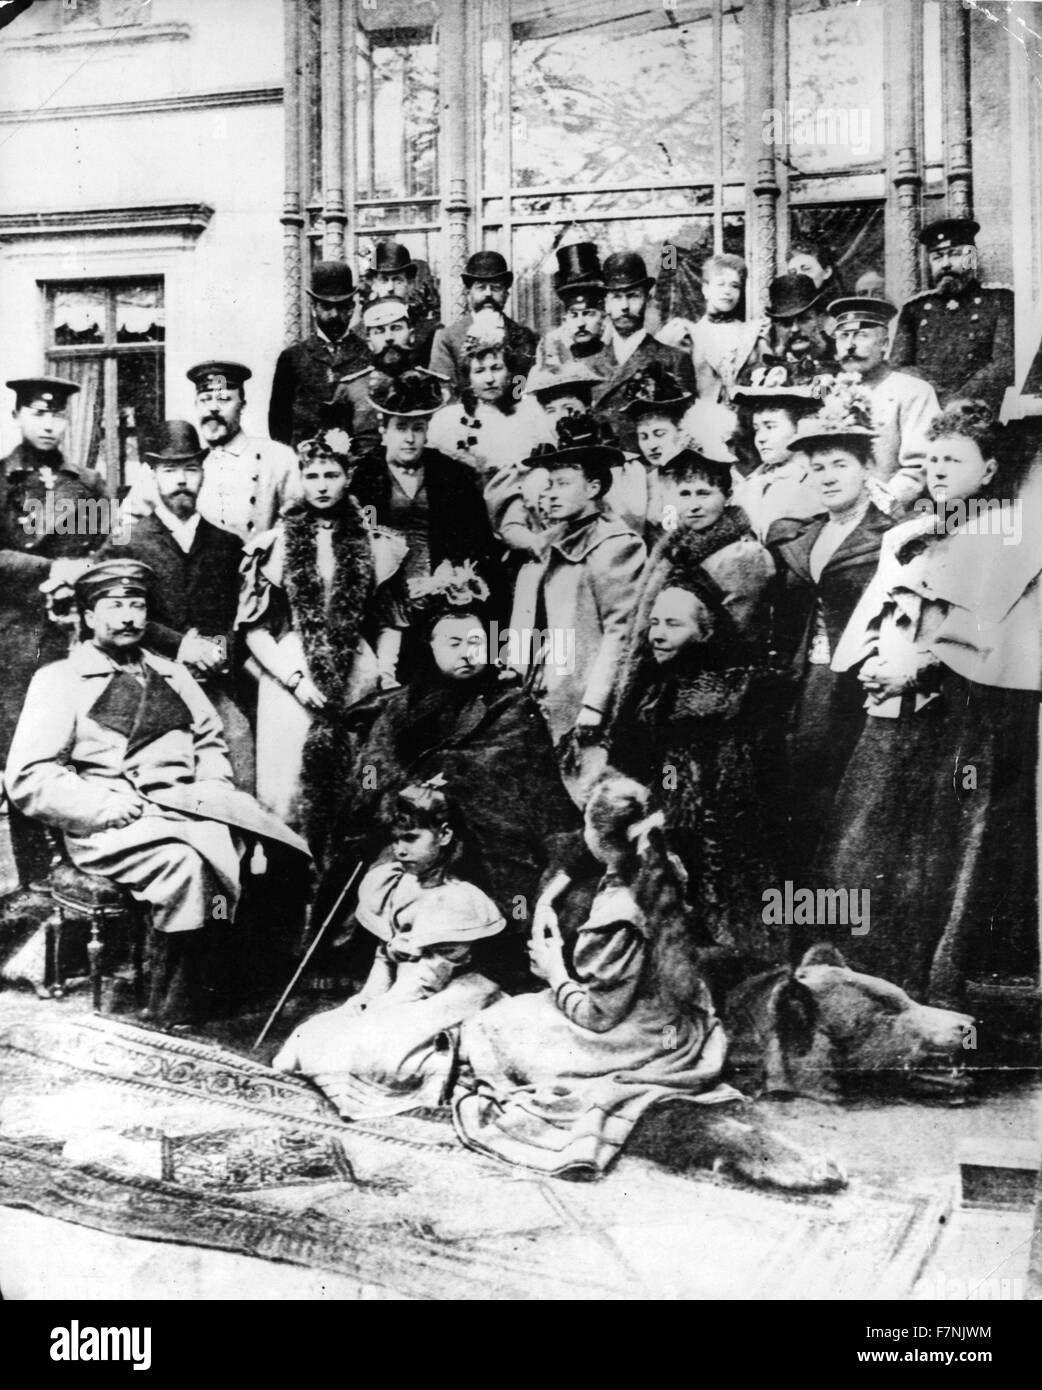 La regina Victoria e della sua famiglia, tra cui il re Edoardo VII, Tsar Nicholas II, Tsarina Alexandra, il Kaiser Guglielmo II e Empress Frederick a un matrimonio in Coburg, Germania 1894 Foto Stock